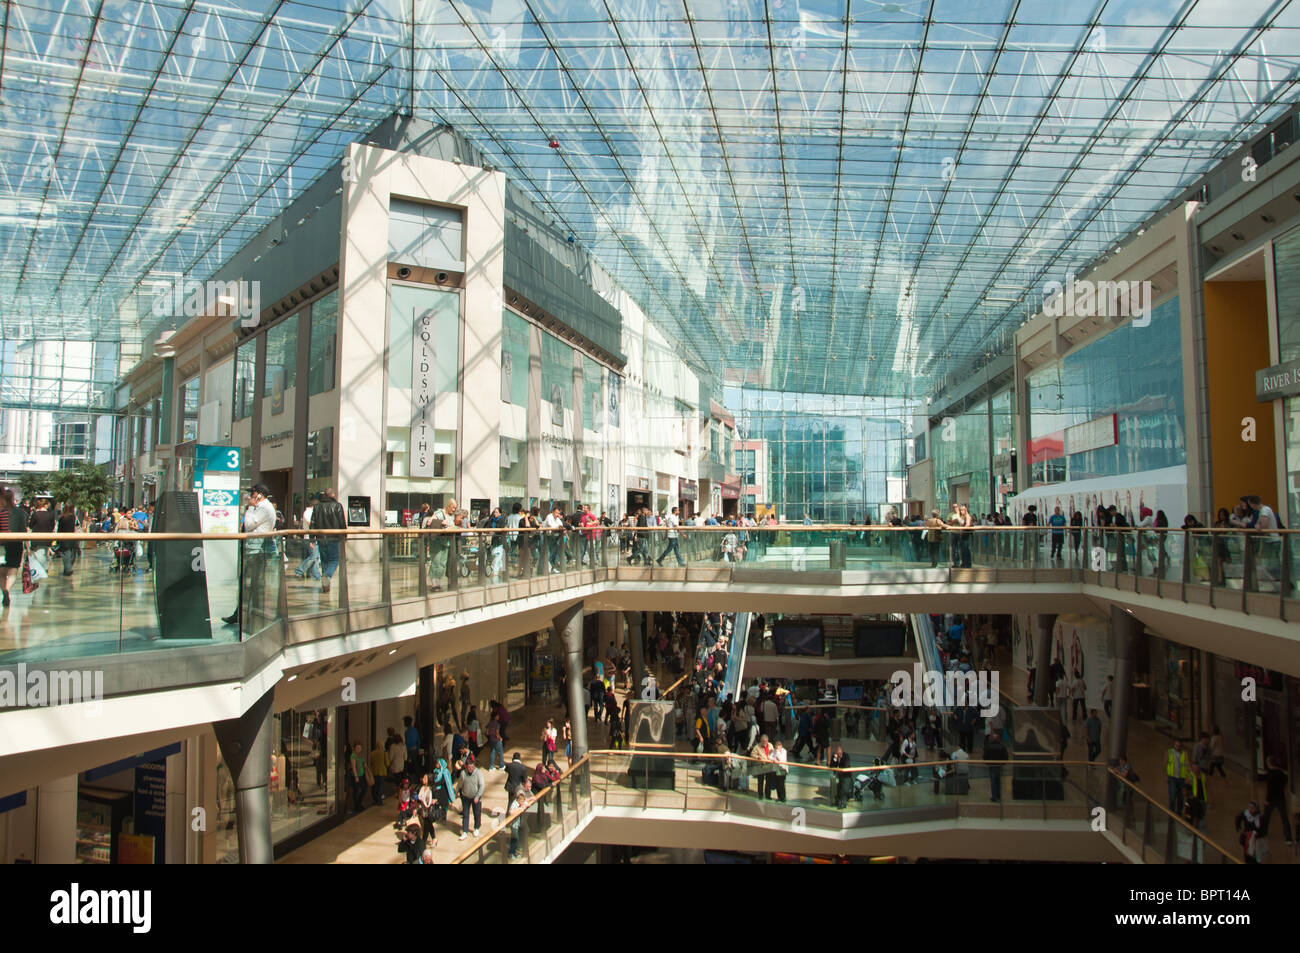 Birmingham Bullring Shopping Mall Interior. UK Stock Photo - Alamy